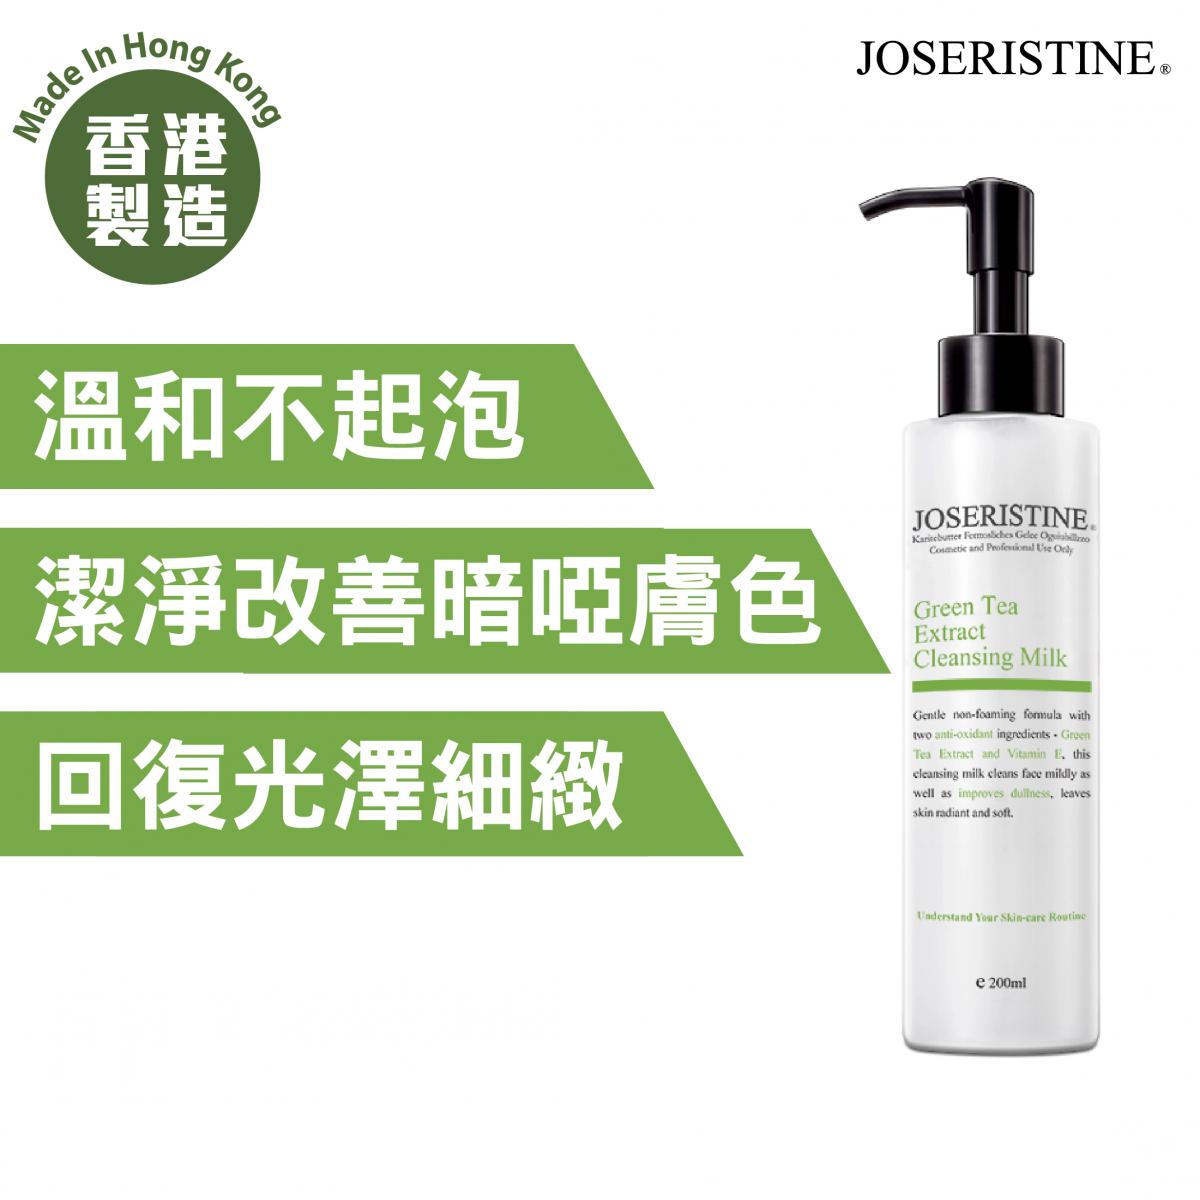 香港 JOSERISTINE - 绿茶抗氧化洗面奶 (200ml) - 能改善暗哑肤色